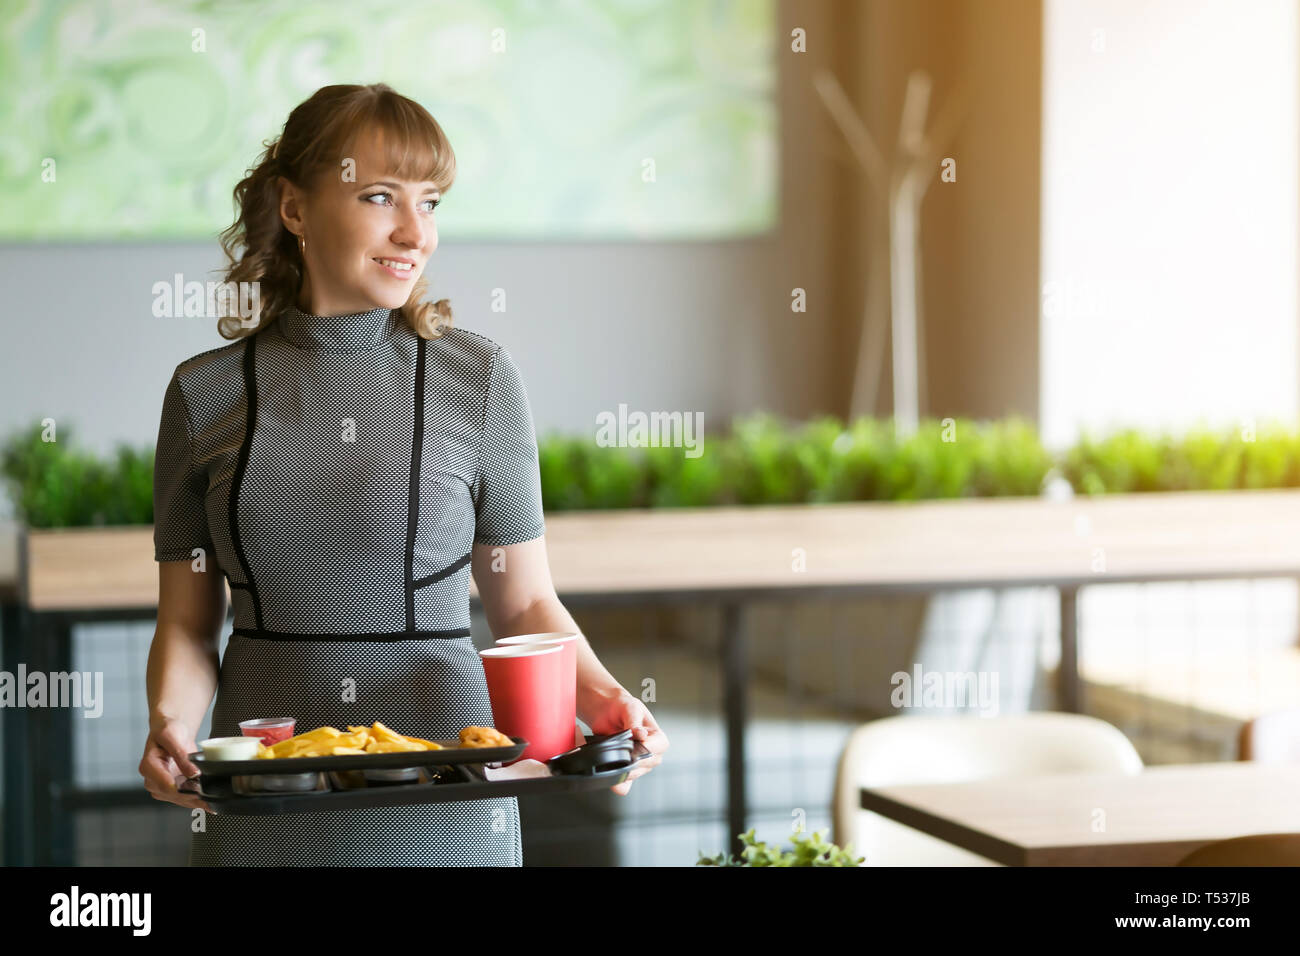 Eine Frau von 30-35 Jahre alt ist, in den Händen ein Dressing auf dem Saft ist Wasser essen Sushi rollen Pommes frites. Stockfoto